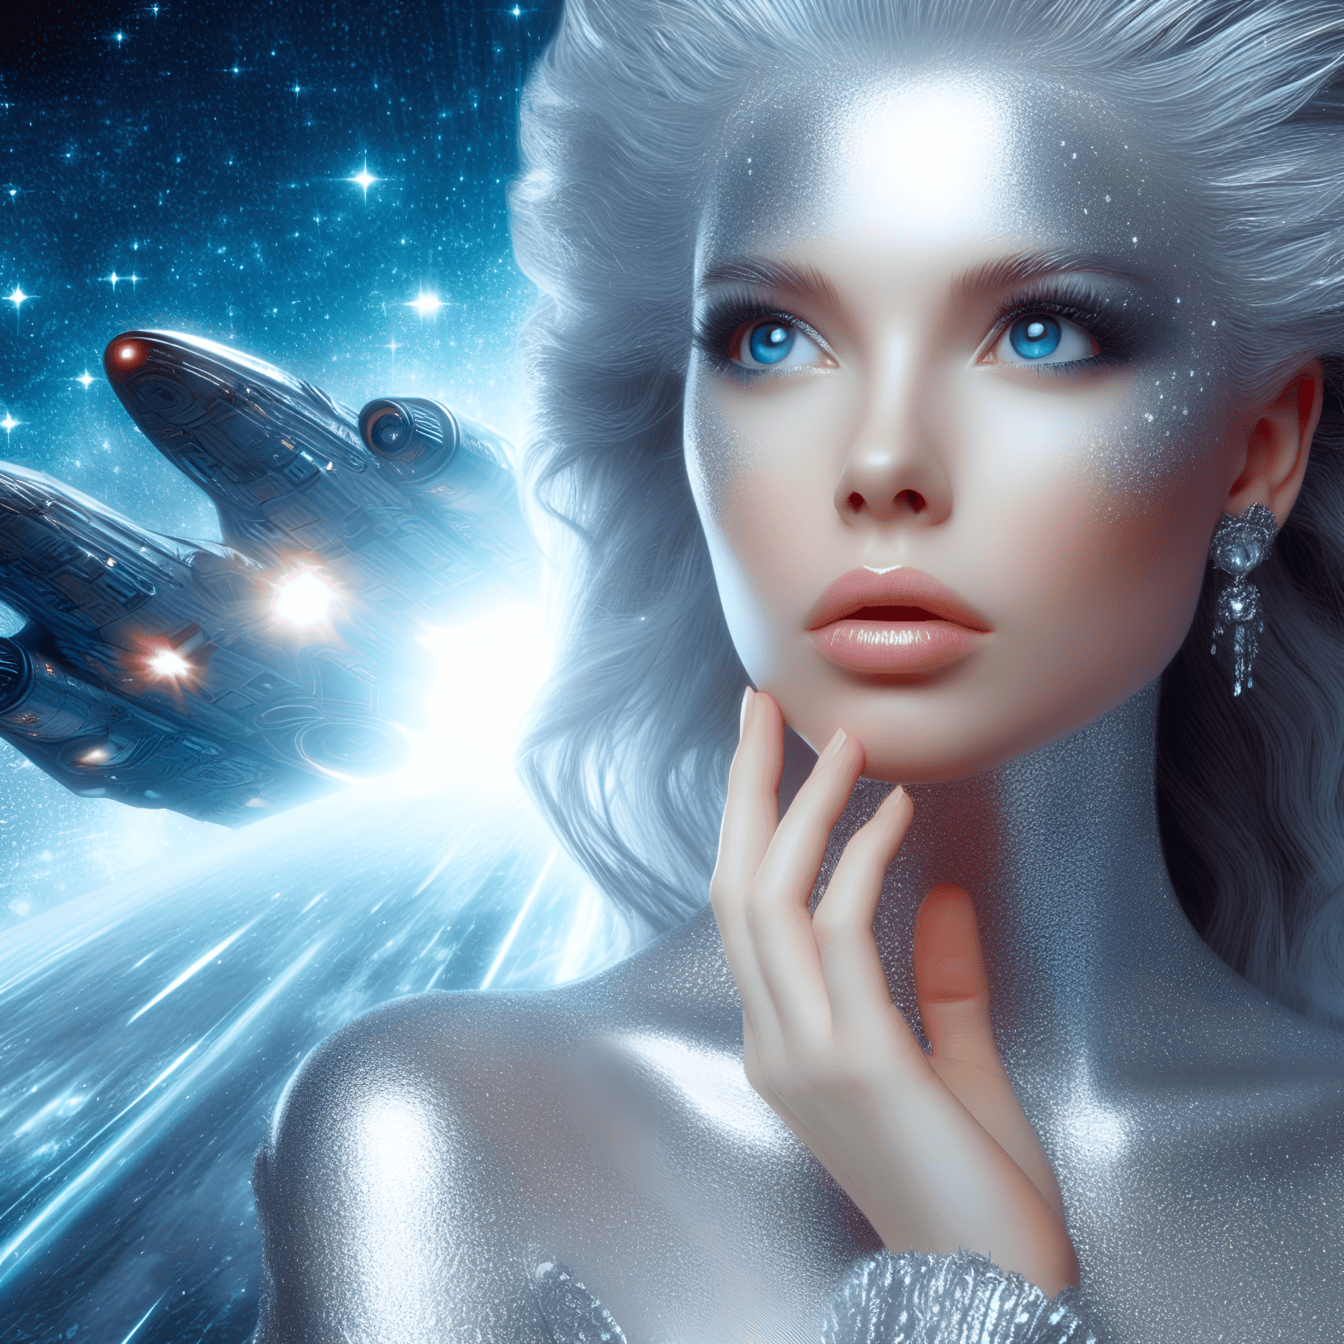 Retrato de uma deusa de um ser superior alienígena com uma nave espacial ao fundo